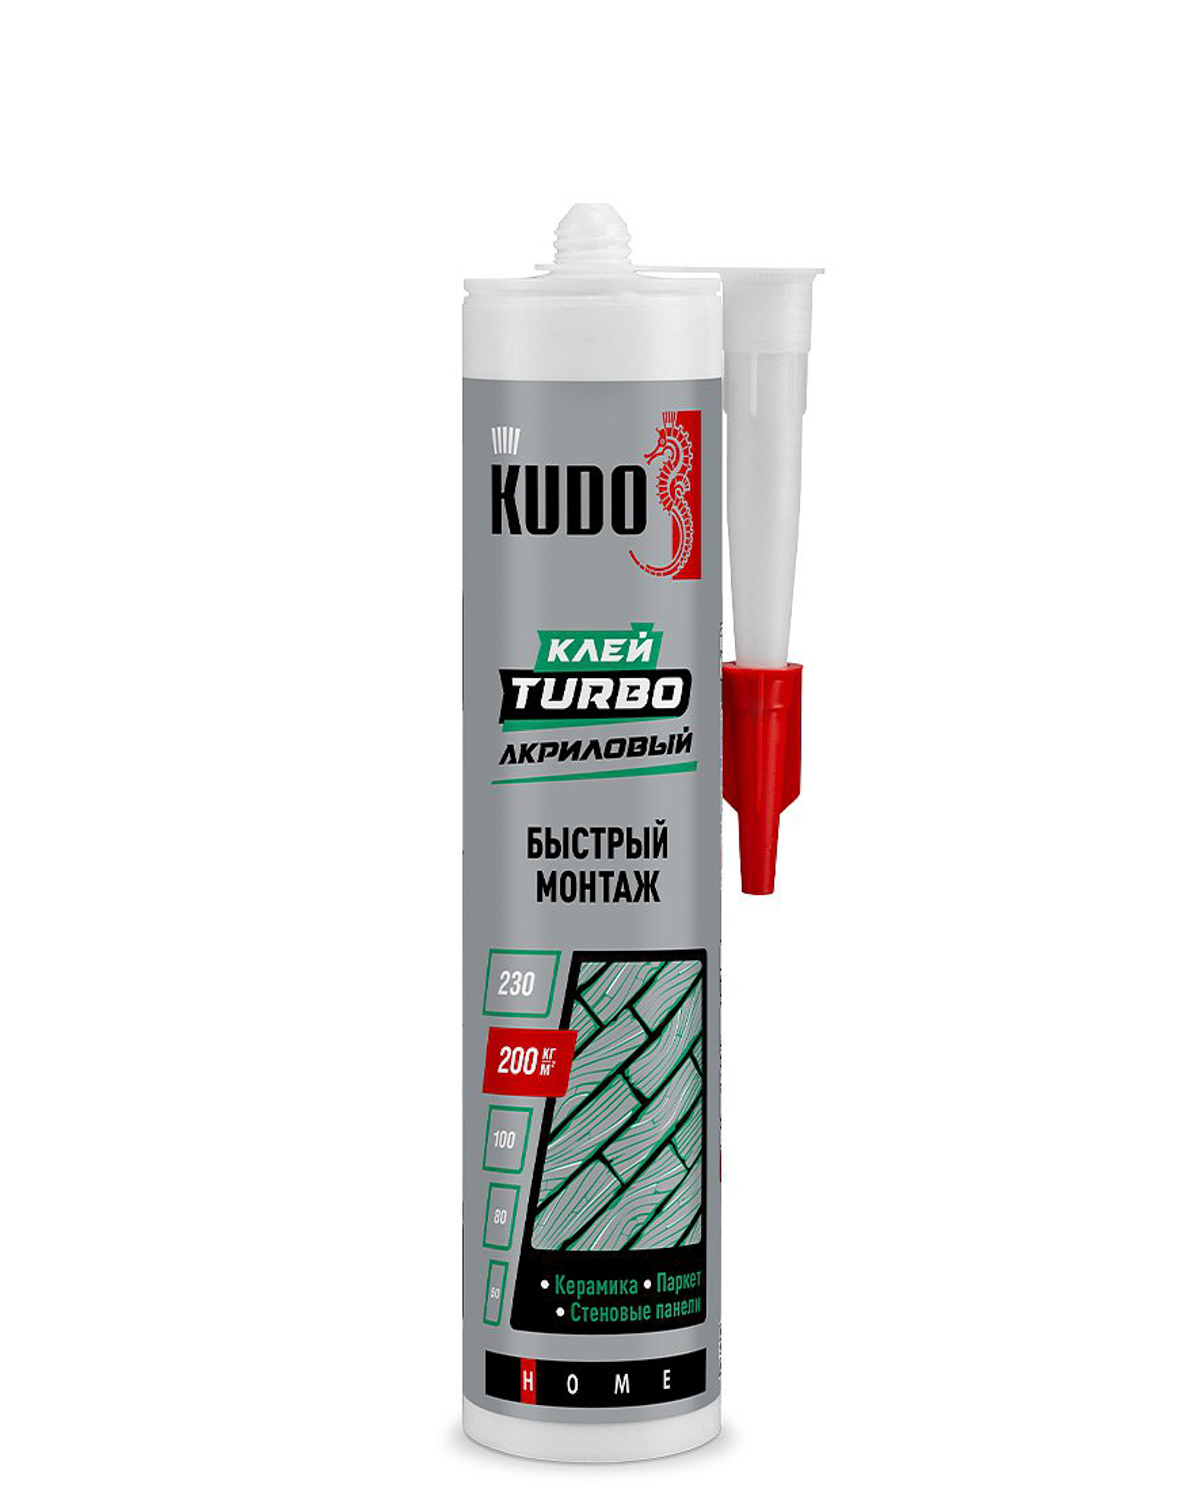 Клей Kudo Turbo для быстрого монтажа универсальный белый KBK-331 280 мл универсальный тонирующий акриловый лак для дерева kudo